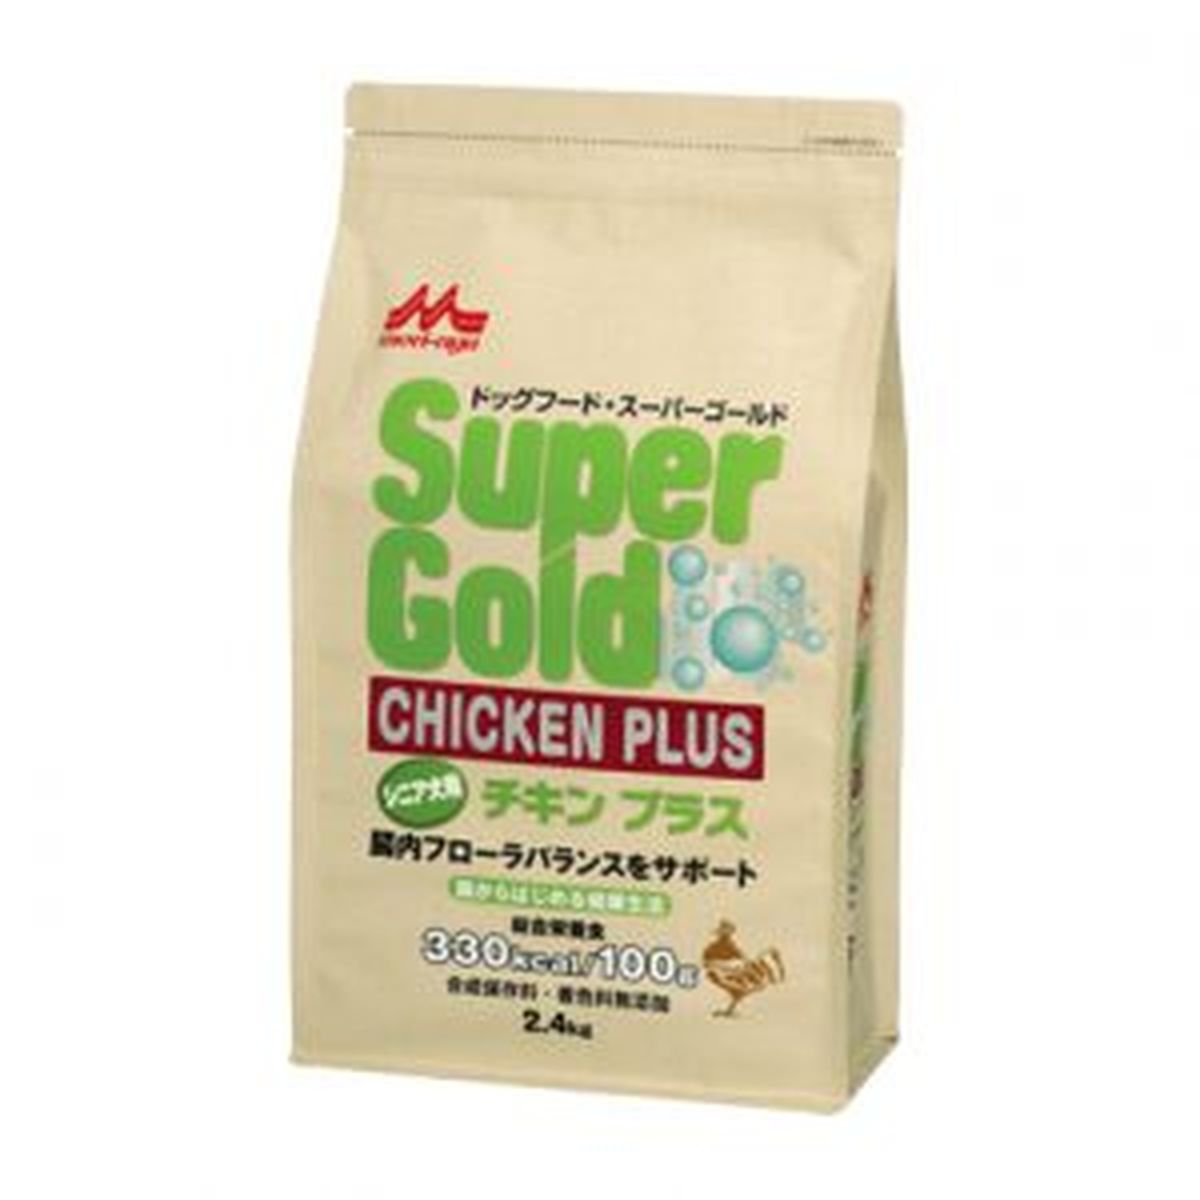 スーパーゴールド チキンプラス シニア犬用2.4kg×4袋